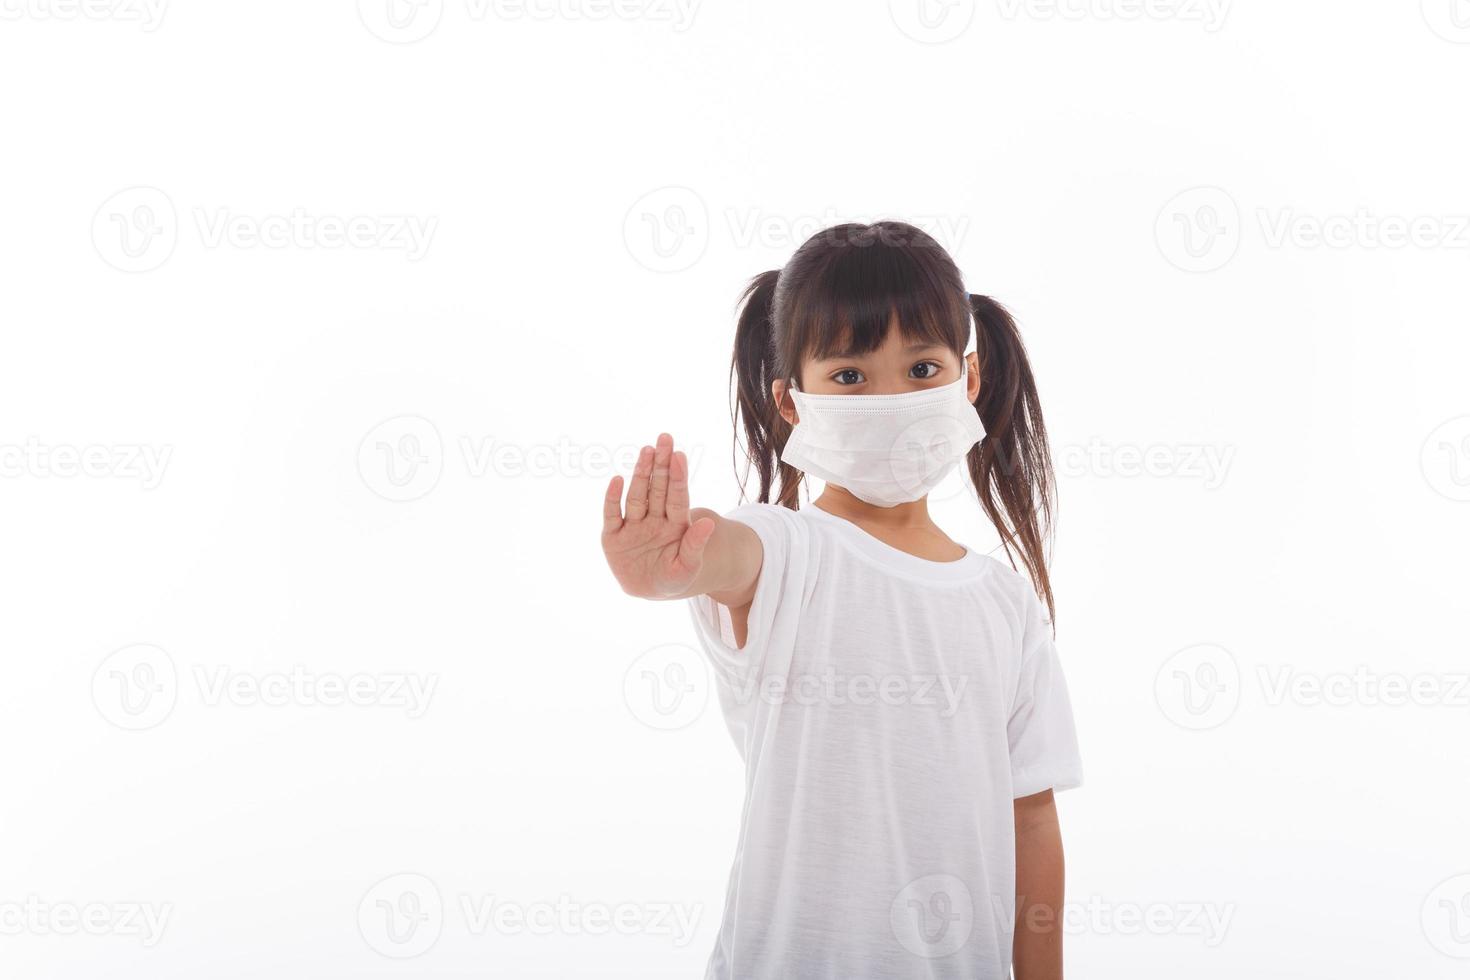 coronavirus covid-19.quédese en casa manténgase a salvo concepto.niña con máscara para protegerse.muestre el gesto de detener las manos para detener el brote del virus de la corona.síntomas del virus pandémico del coronavirus. foto